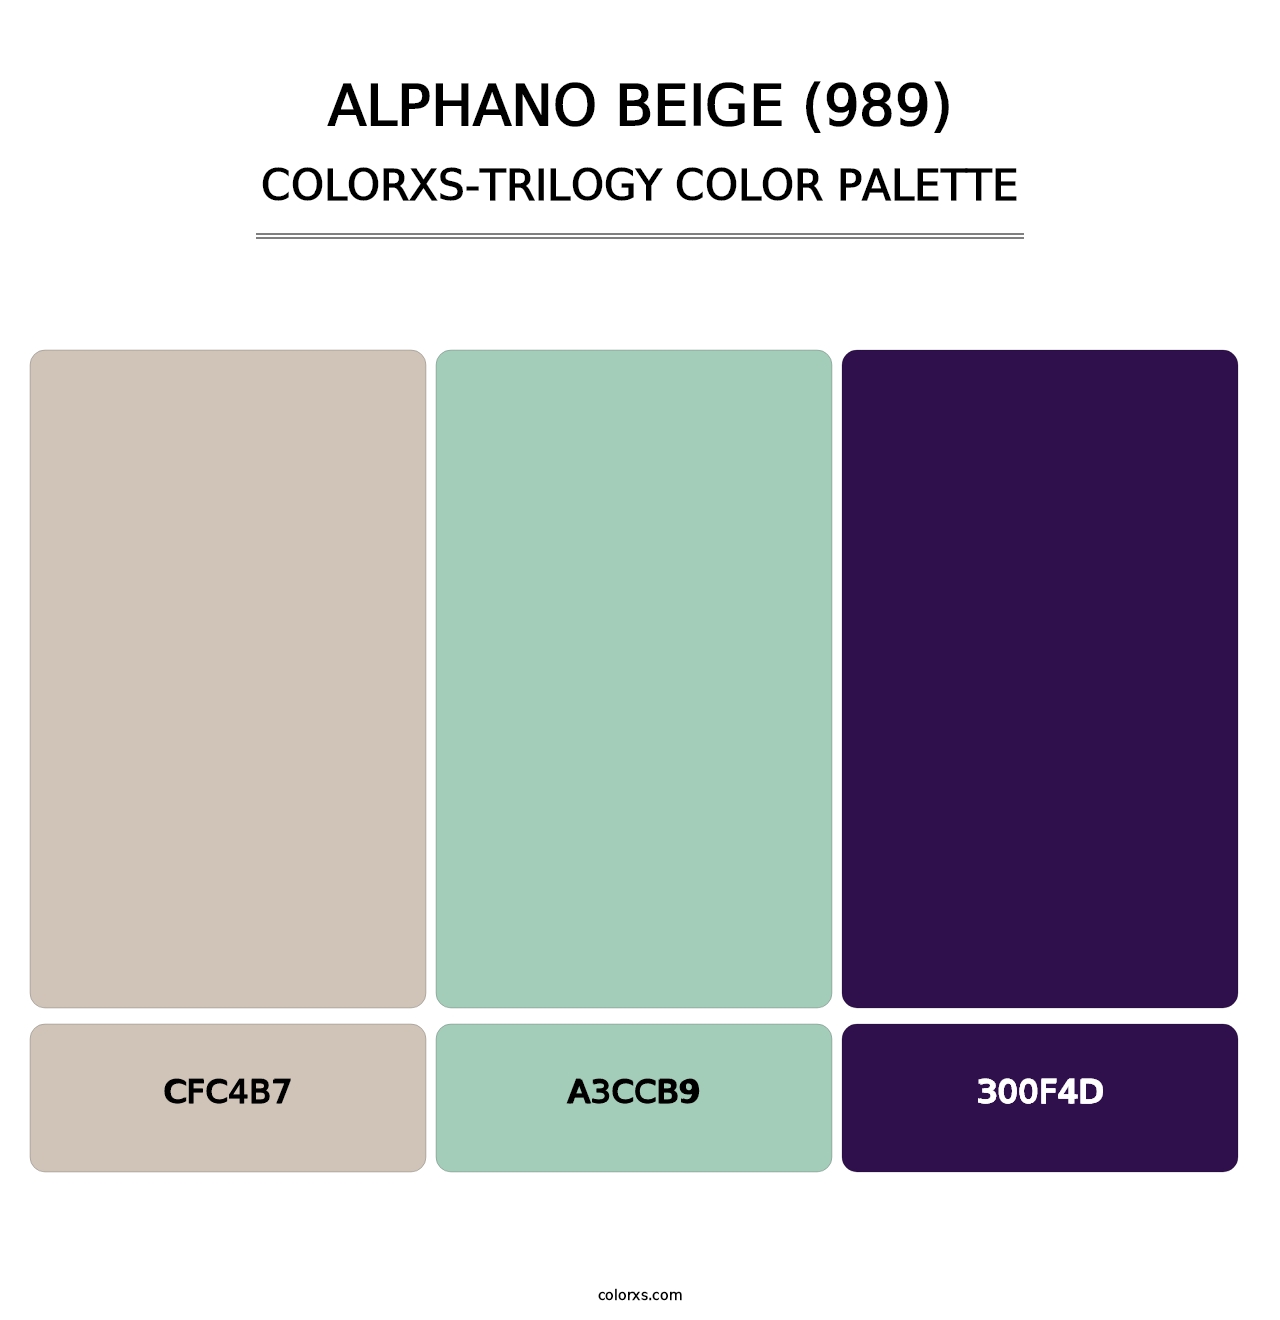 Alphano Beige (989) - Colorxs Trilogy Palette